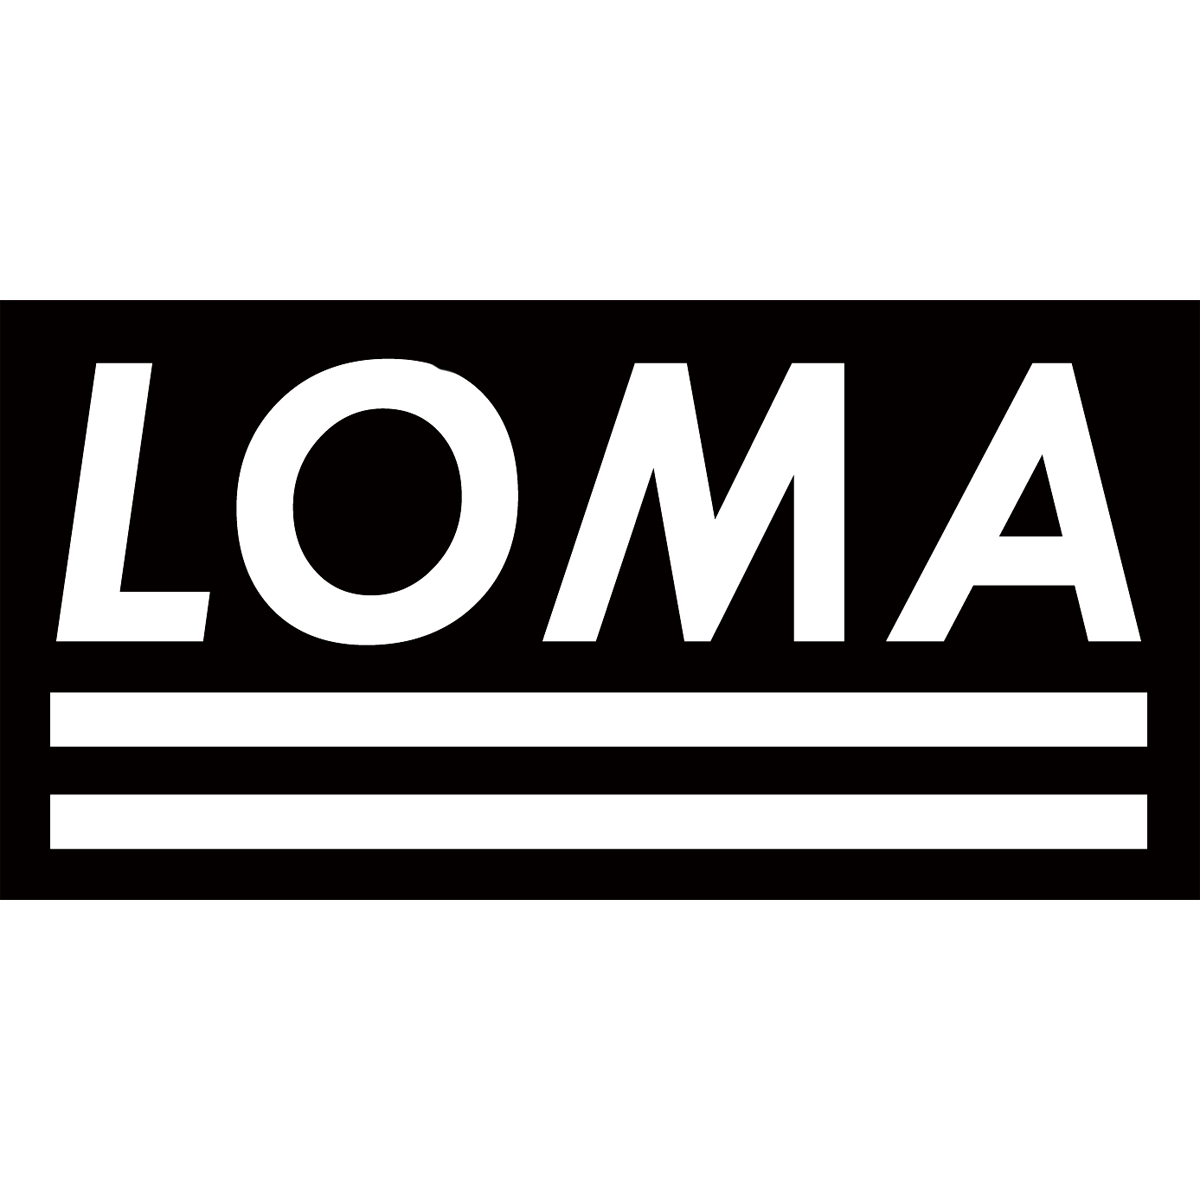 Loma Logo - Loma Prieta 